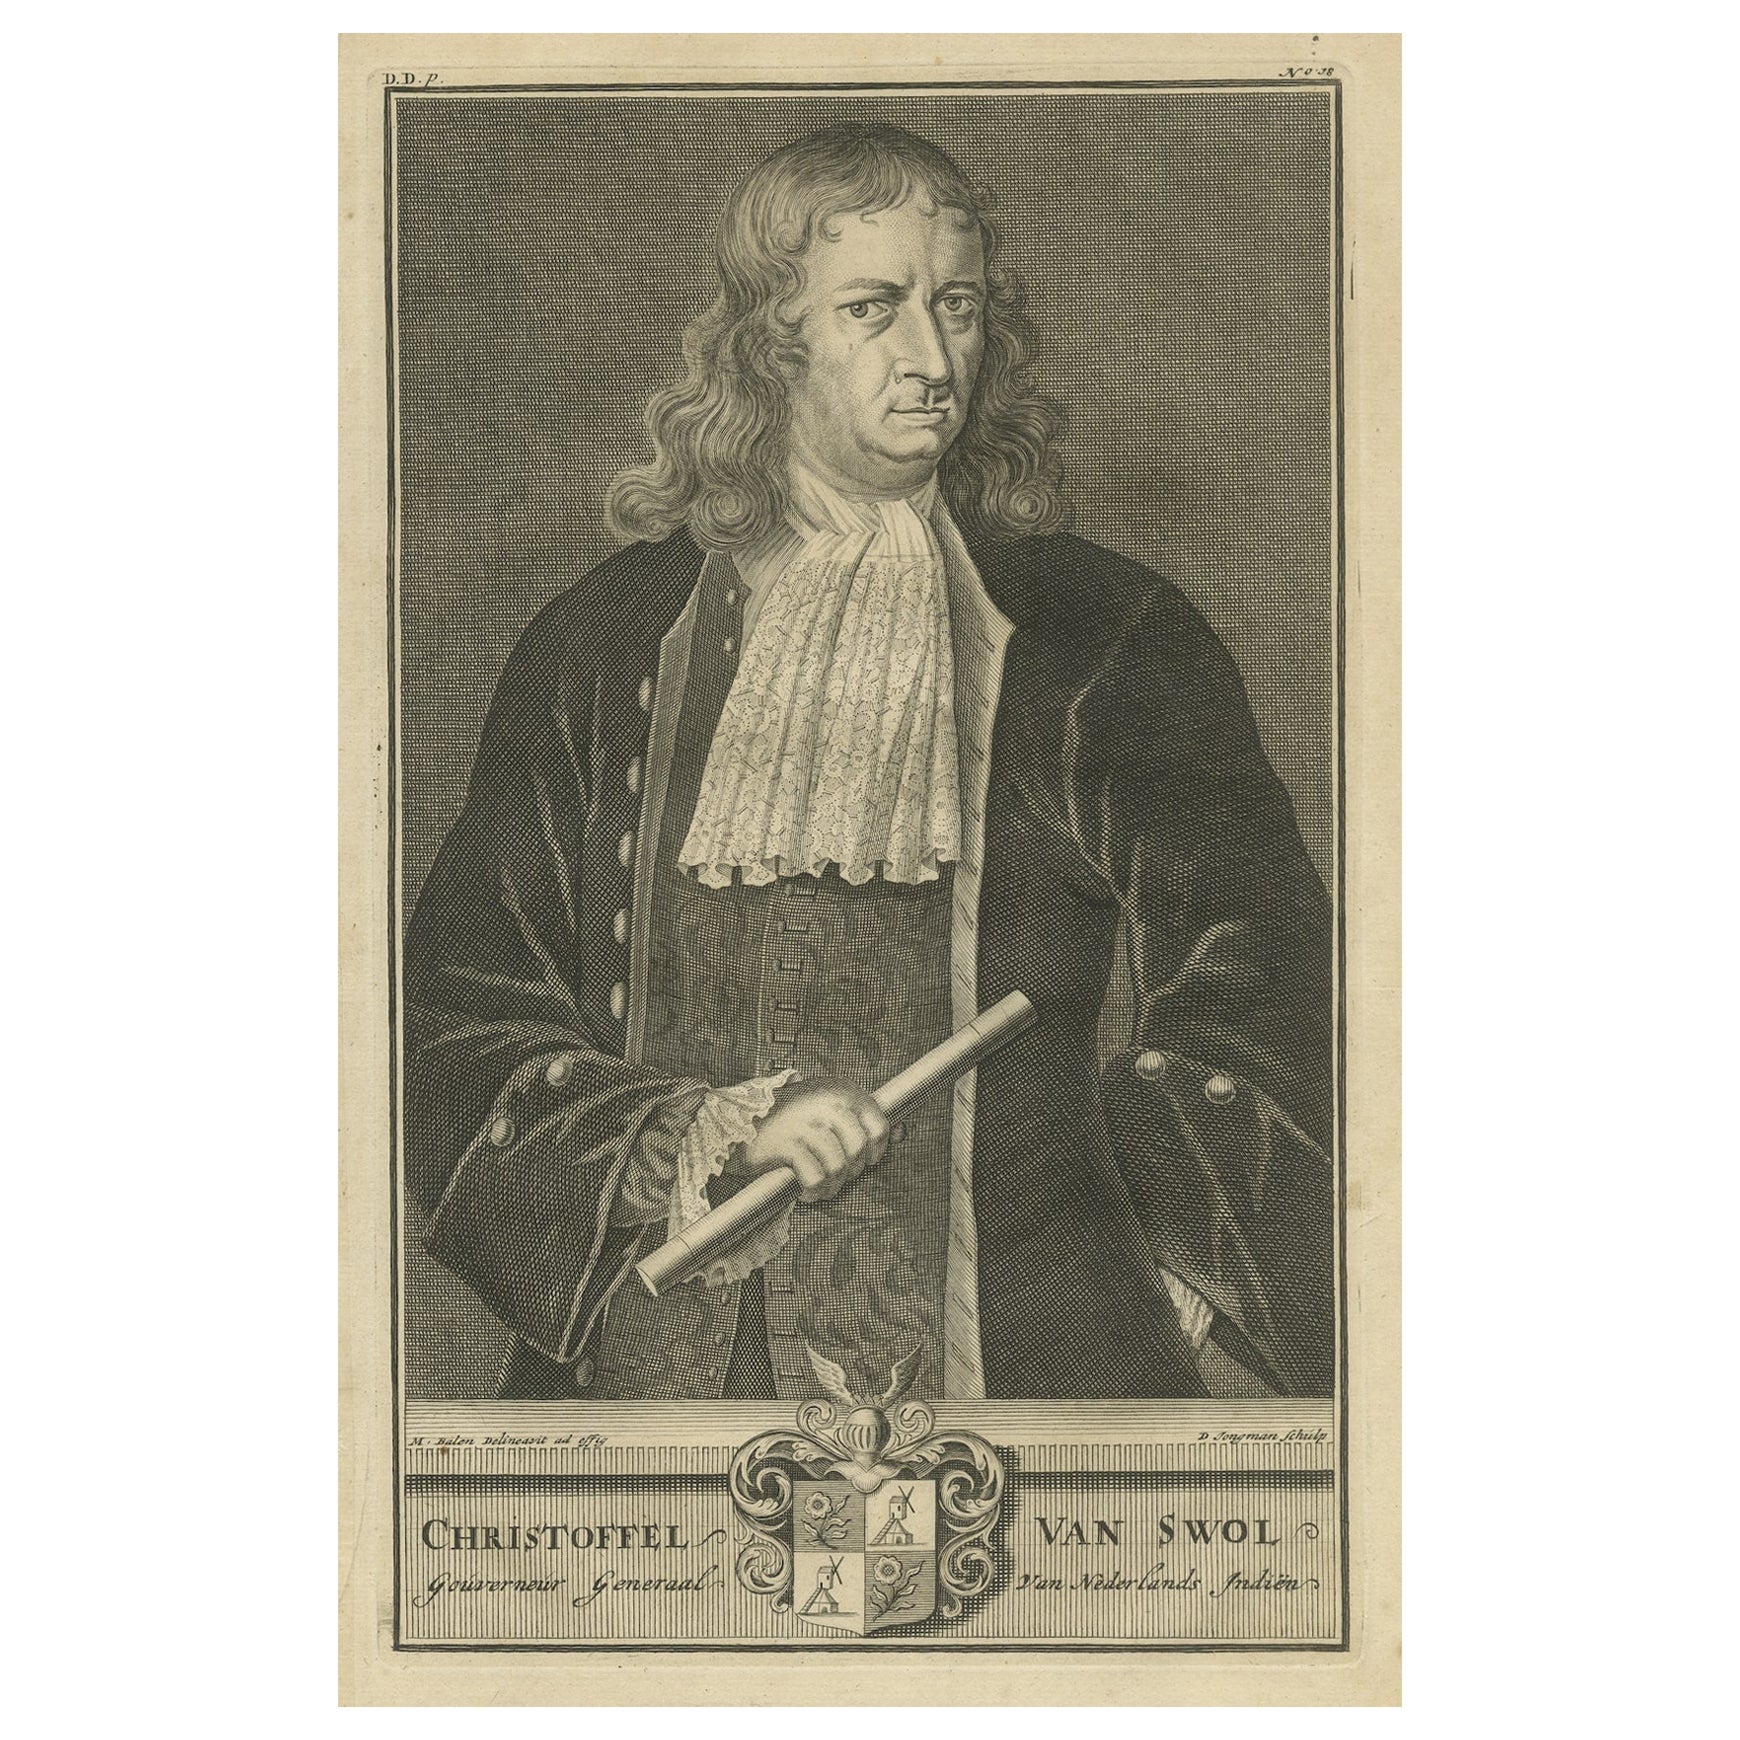 Gravure du gouverneur-général distingué de la VOC Christoffel van Swol 1724